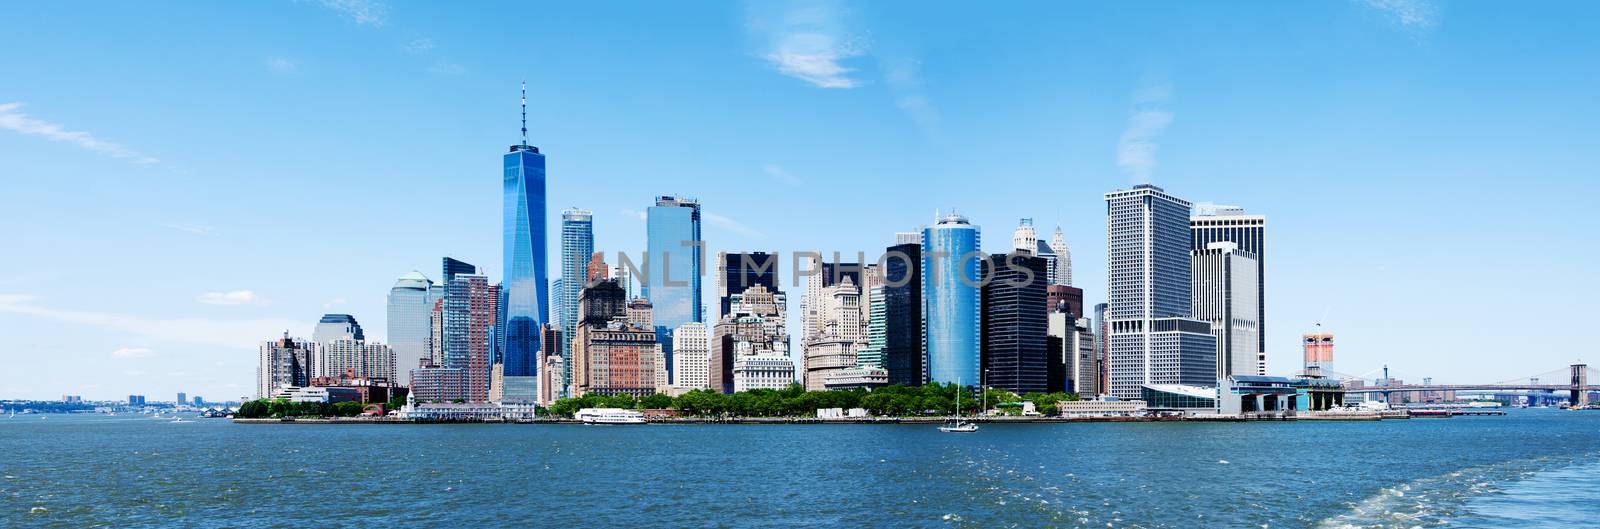 Panorama of Landmark New York City Manhattan Skyline and World Trade Center Freedom Tower.